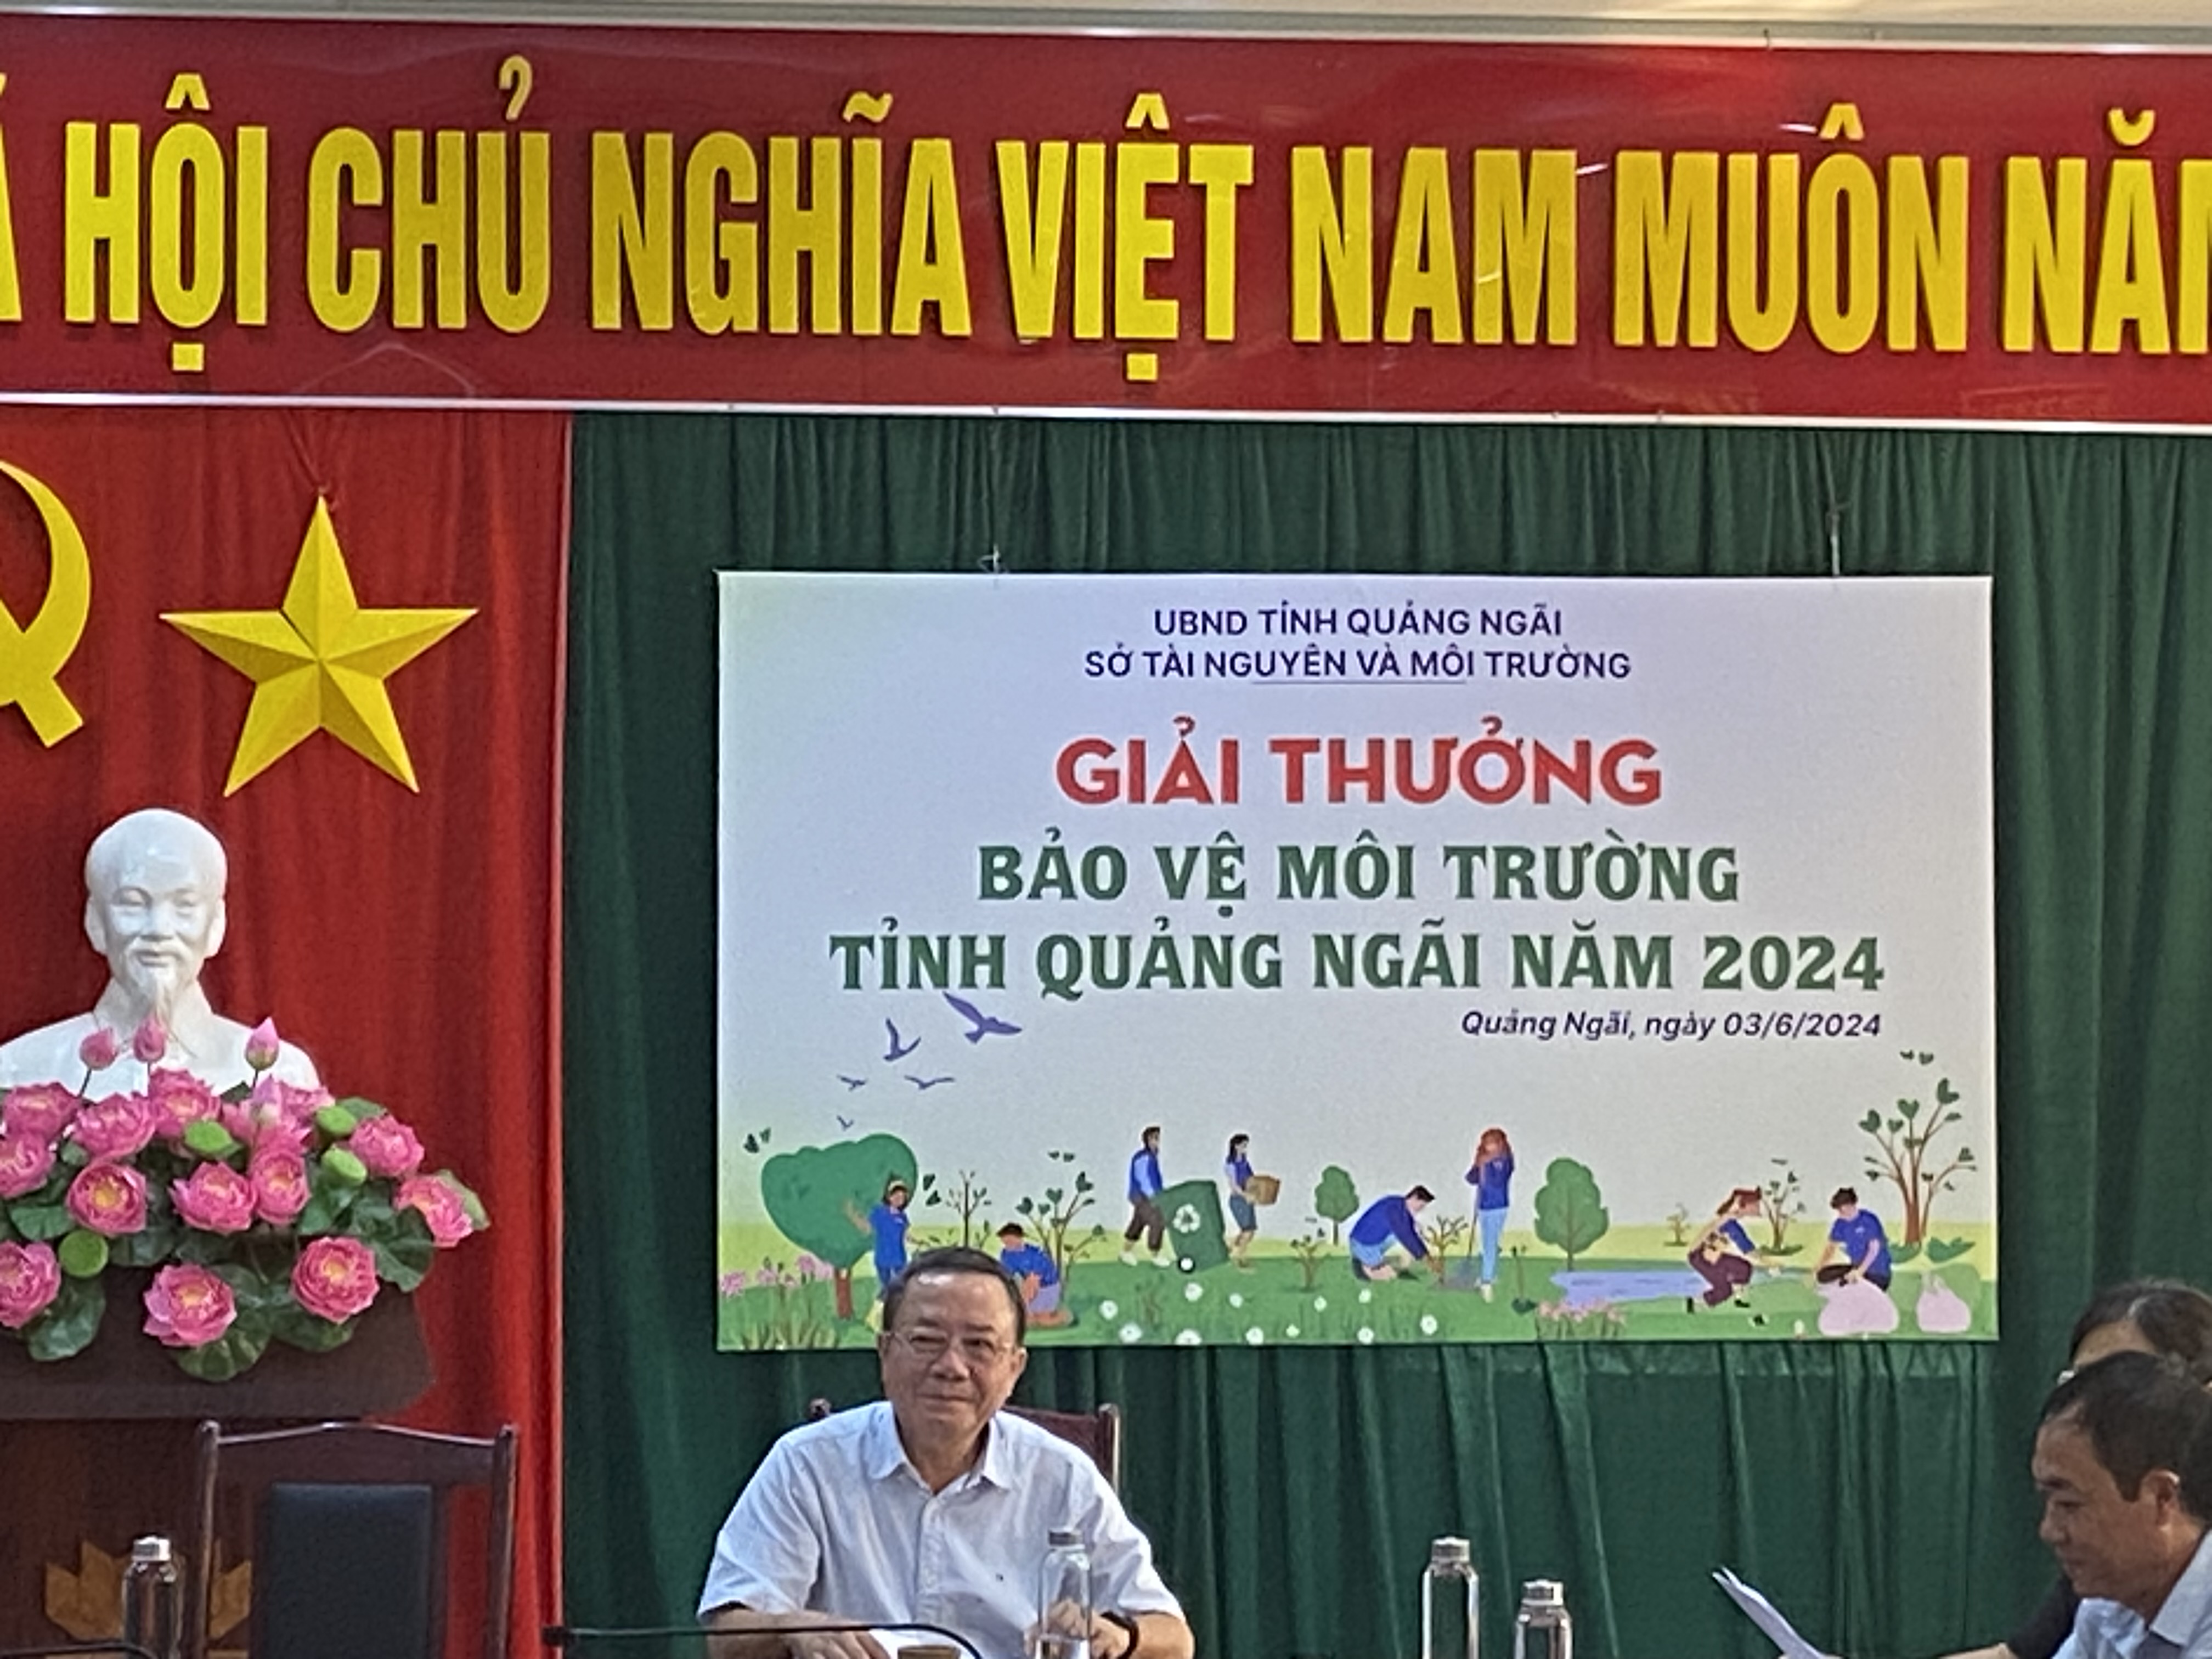 Trao giải thưởng bảo vệ môi trường tỉnh Quảng Ngãi năm 2024